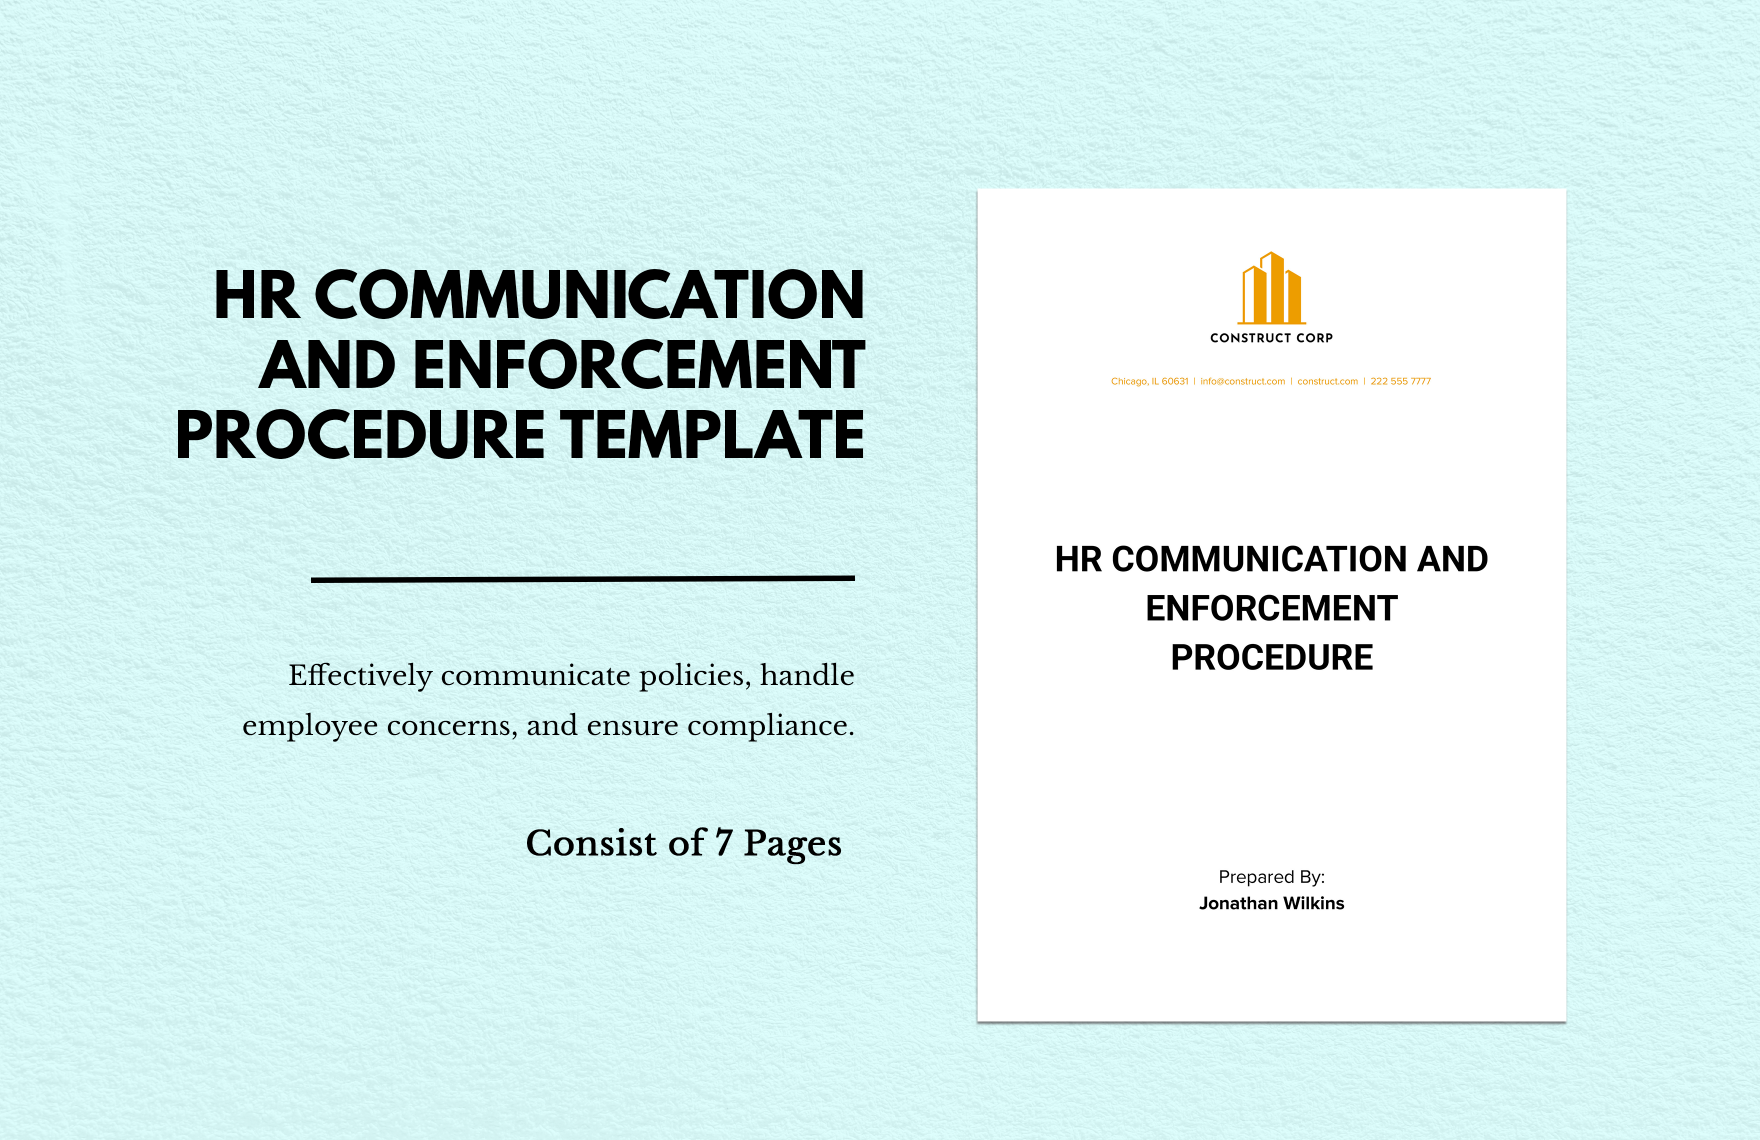 HR Communication and Enforcement Procedure